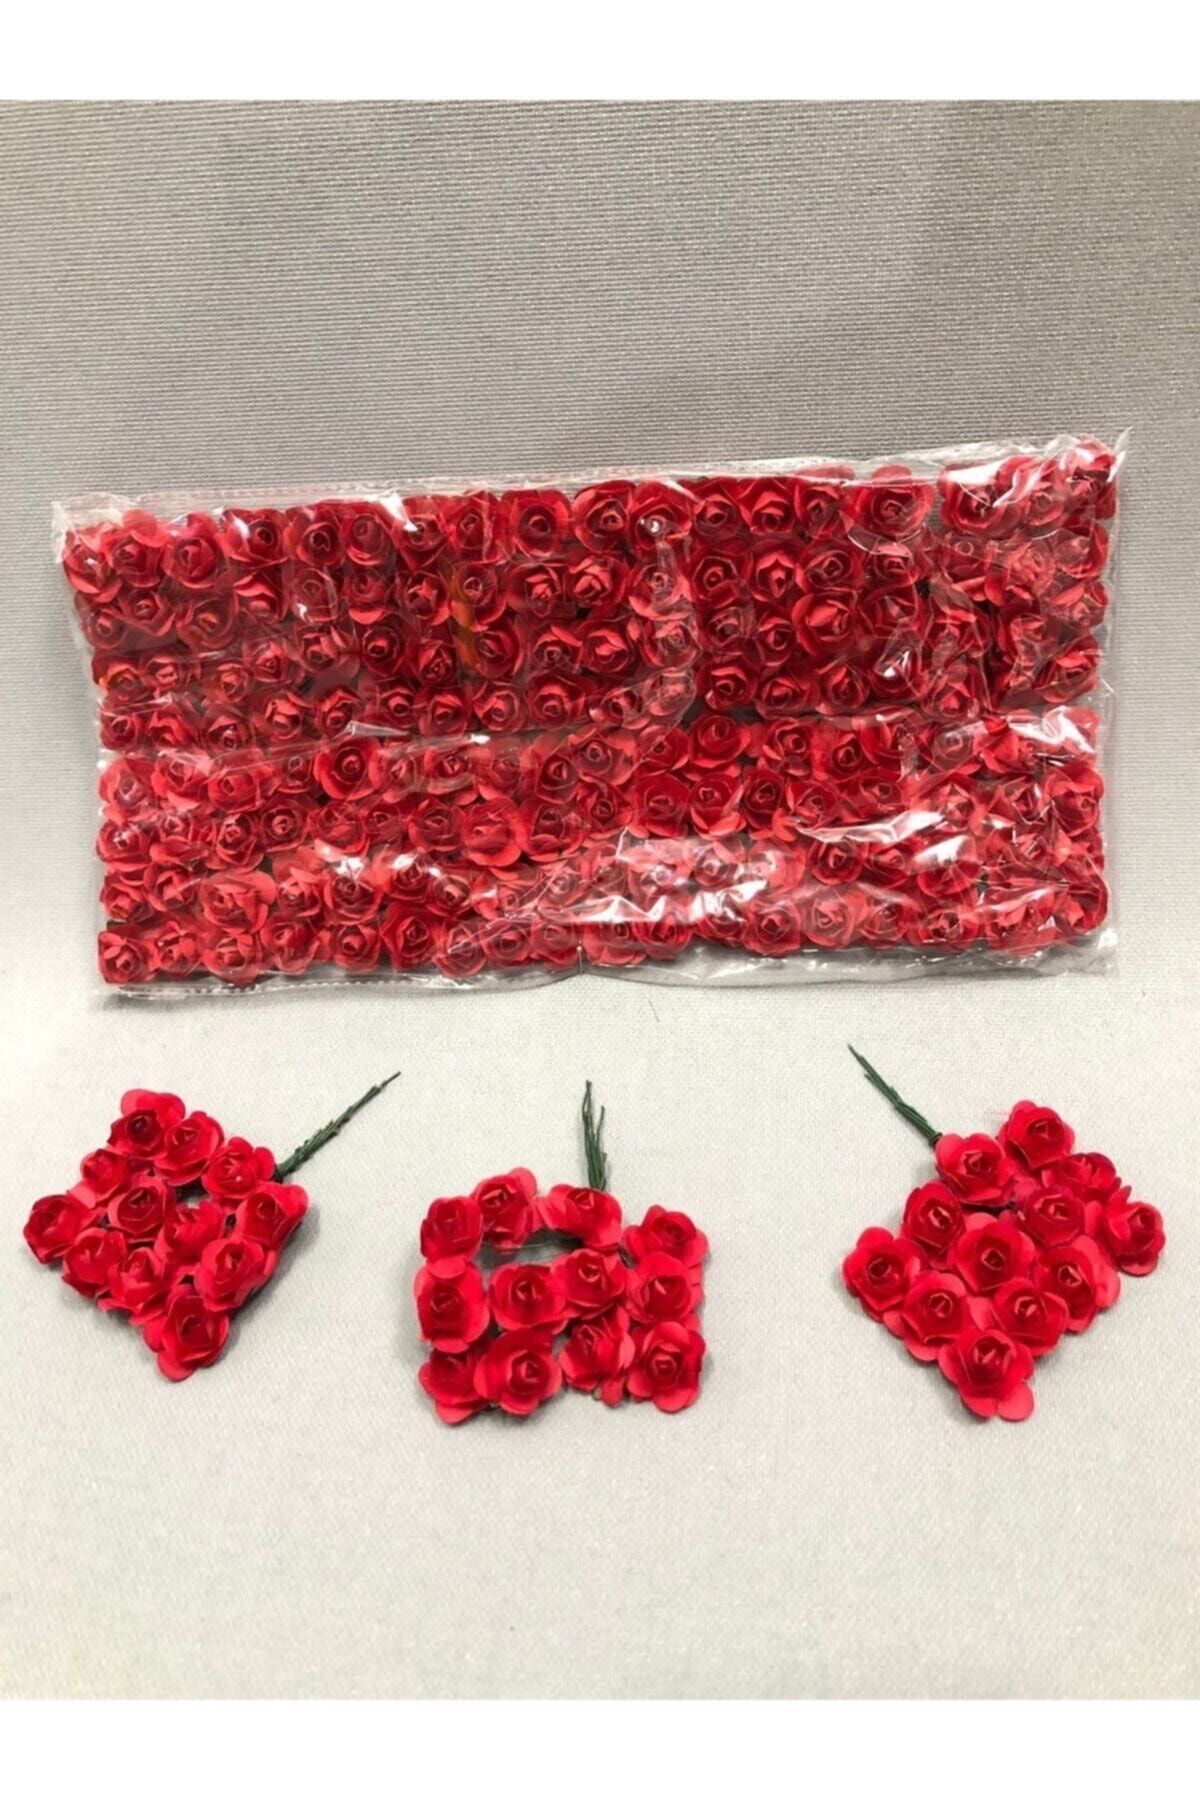 Aker Hediyelik Al Kırmızısı Süsleme Kagıt Gül (1 Paket 144 Lü ) Yapay Güller